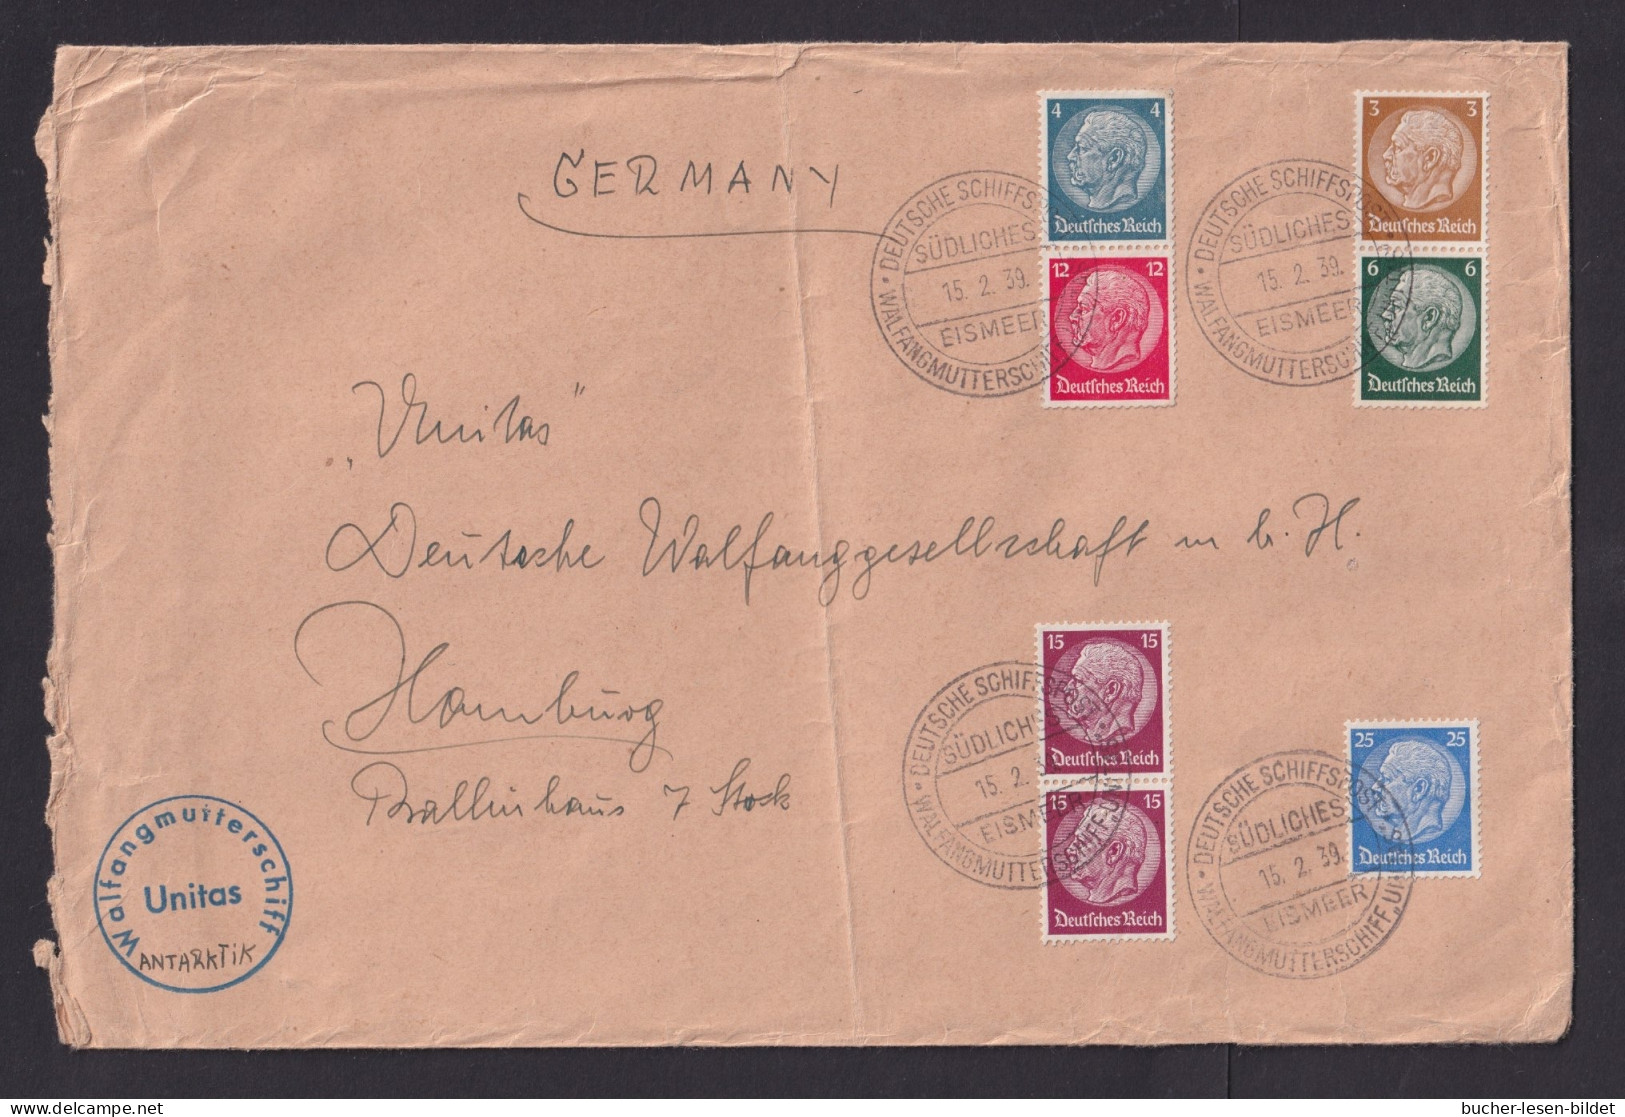 1939 - Bedarfsbrief Mit Schiffstempel "Walfangflotte Südliches Eismeer Unitas" - SEHR  SELTEN - Ballenas